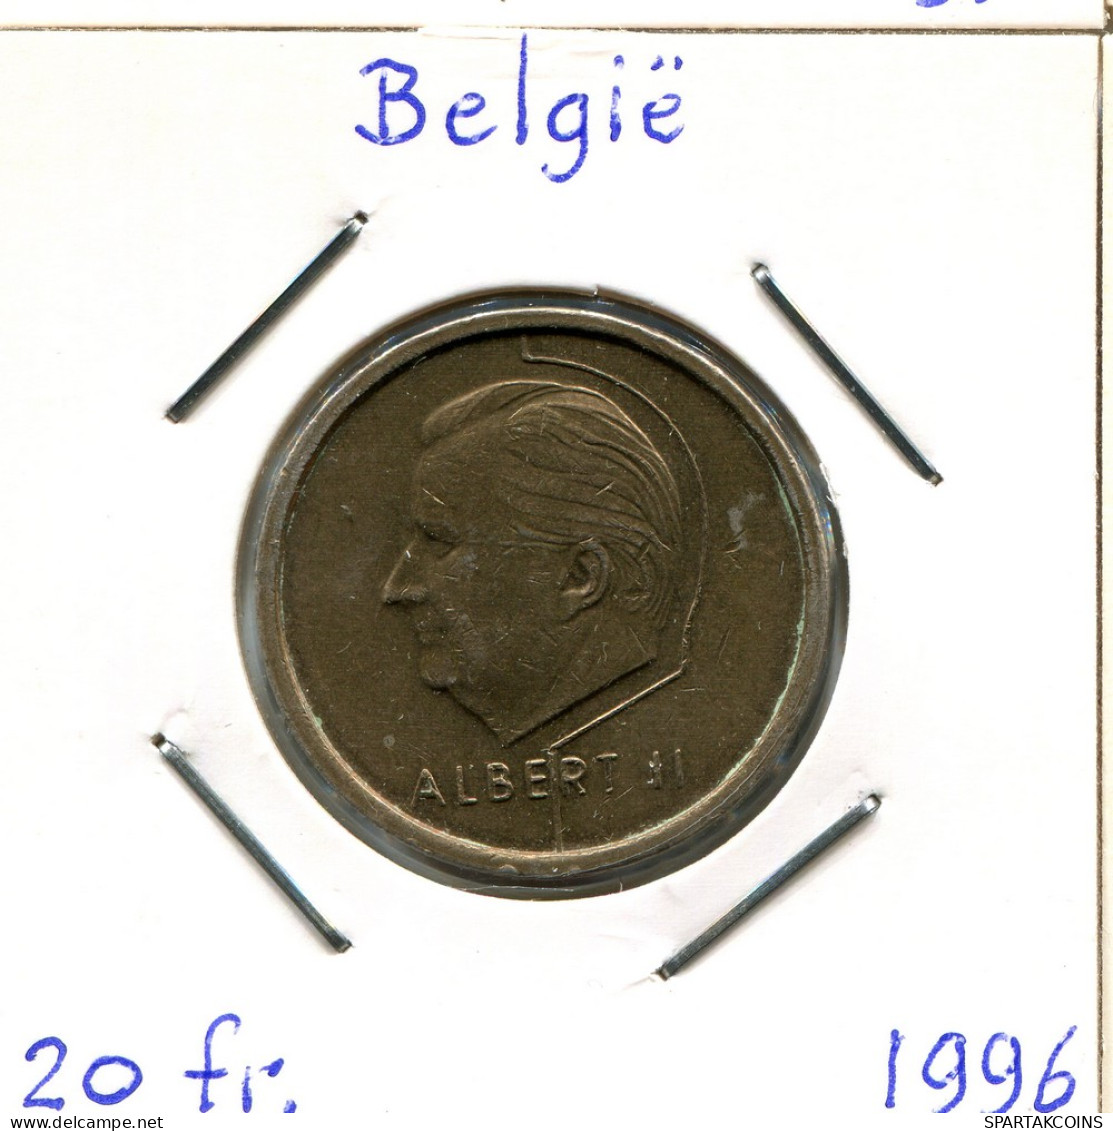 20 FRANCS 1996 DUTCH Text BELGIQUE BELGIUM Pièce #BA673.F - 20 Francs